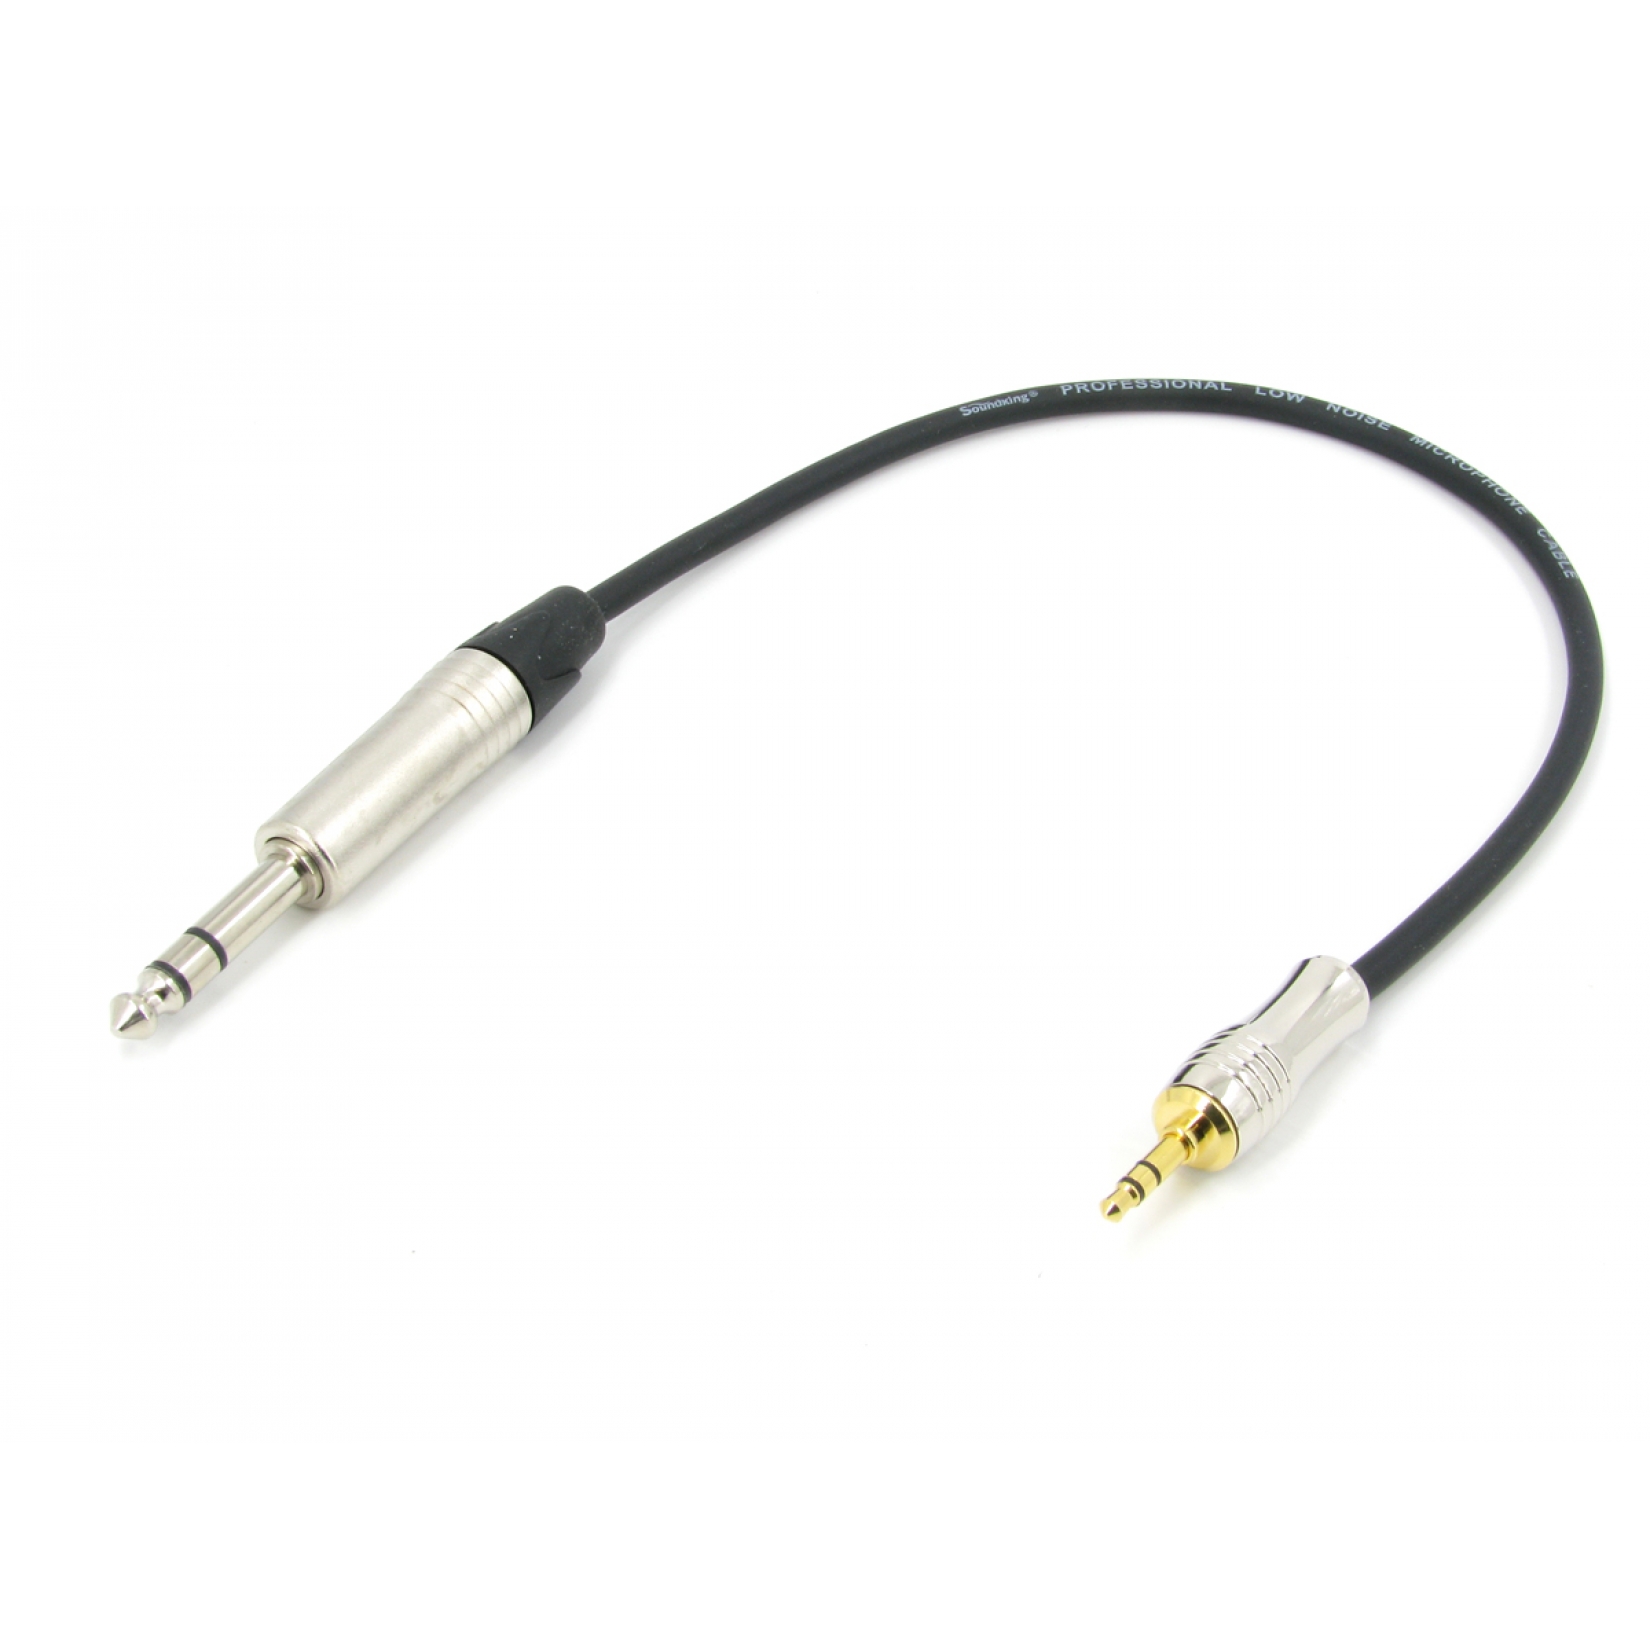 Аудио кабель mini JACK 3.5 - JACK 6.3 межблочный, симметричный, балансный, длина 0,5 метра